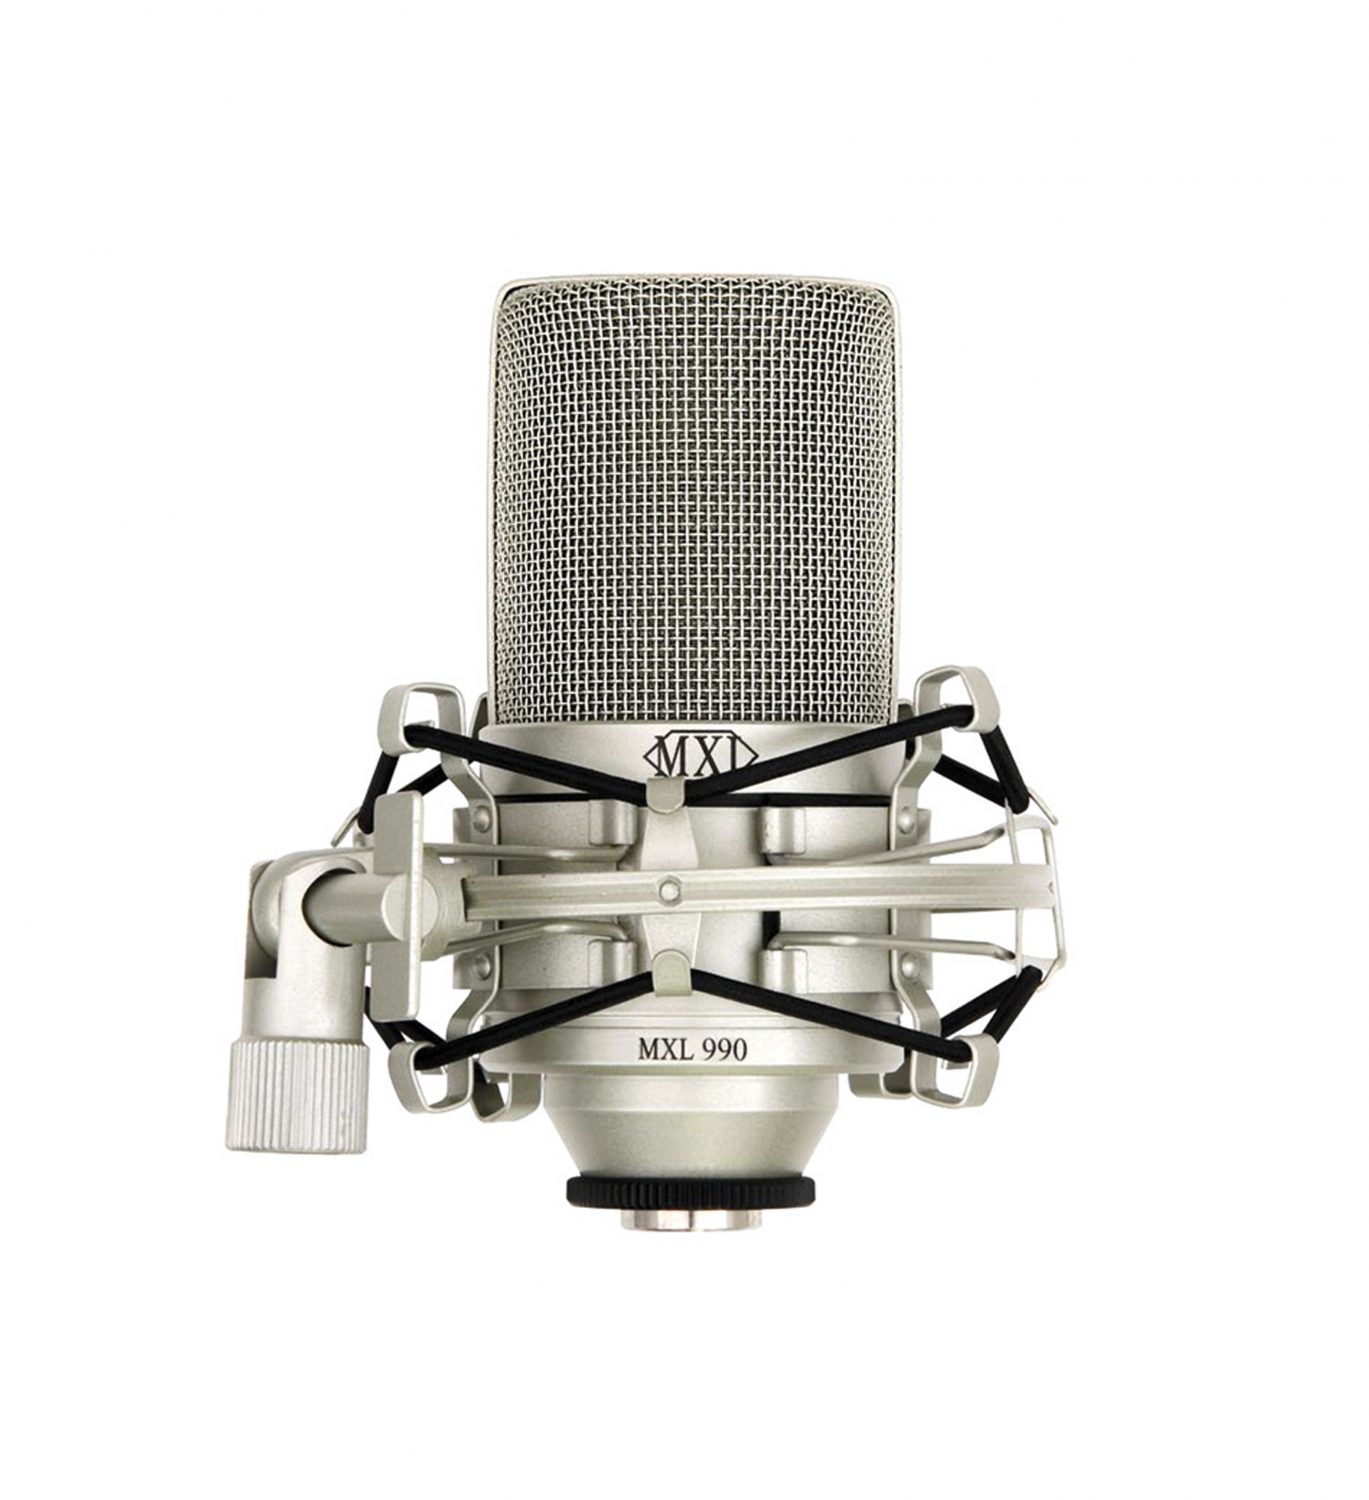 Microfone MXL 990 - Condensador